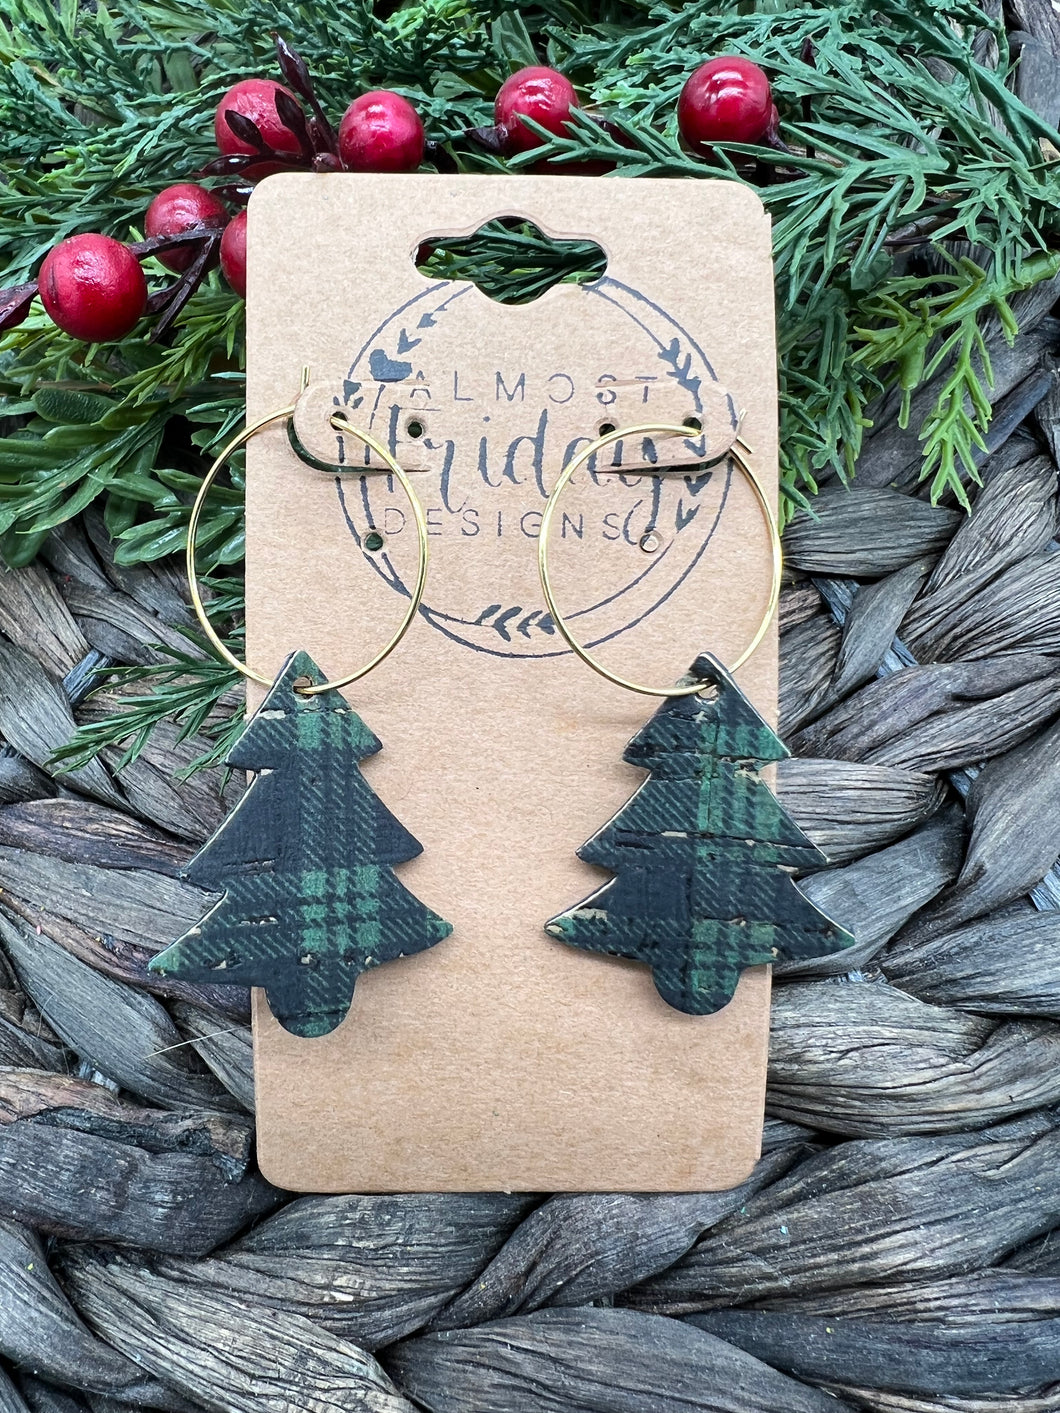 Genuine Leather Earrings - Christmas Trees - Christmas - Statement Earrings - Plaid - Green - Black - Gold - Hoop Earrings